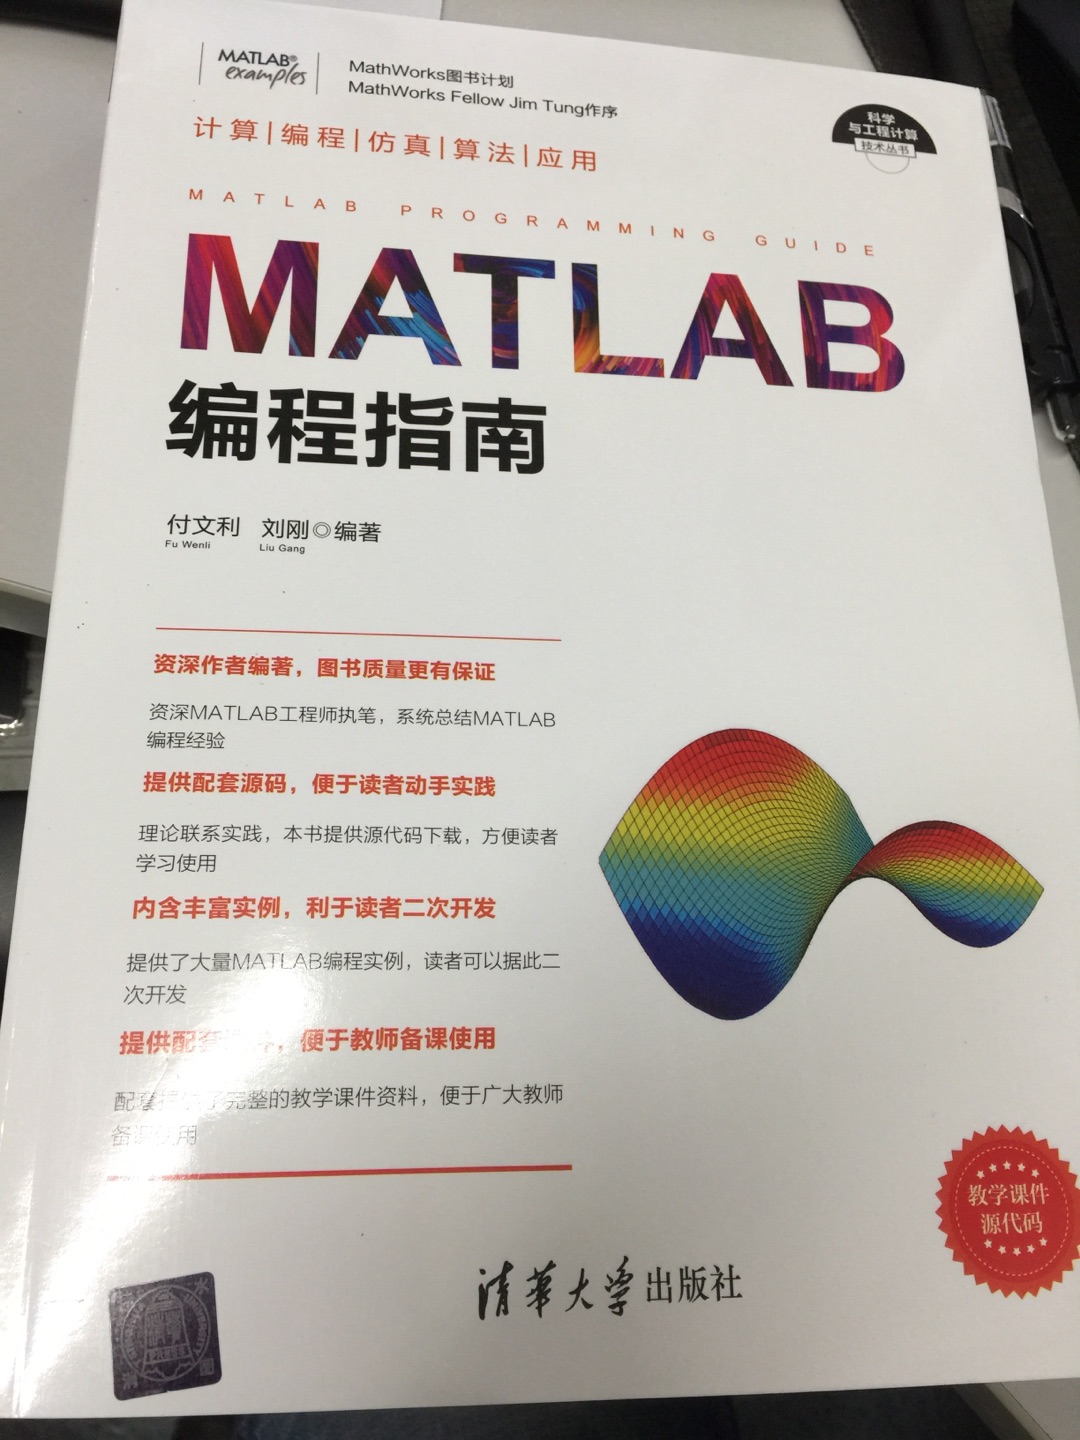 Matlab编程指南写的挺详细介绍